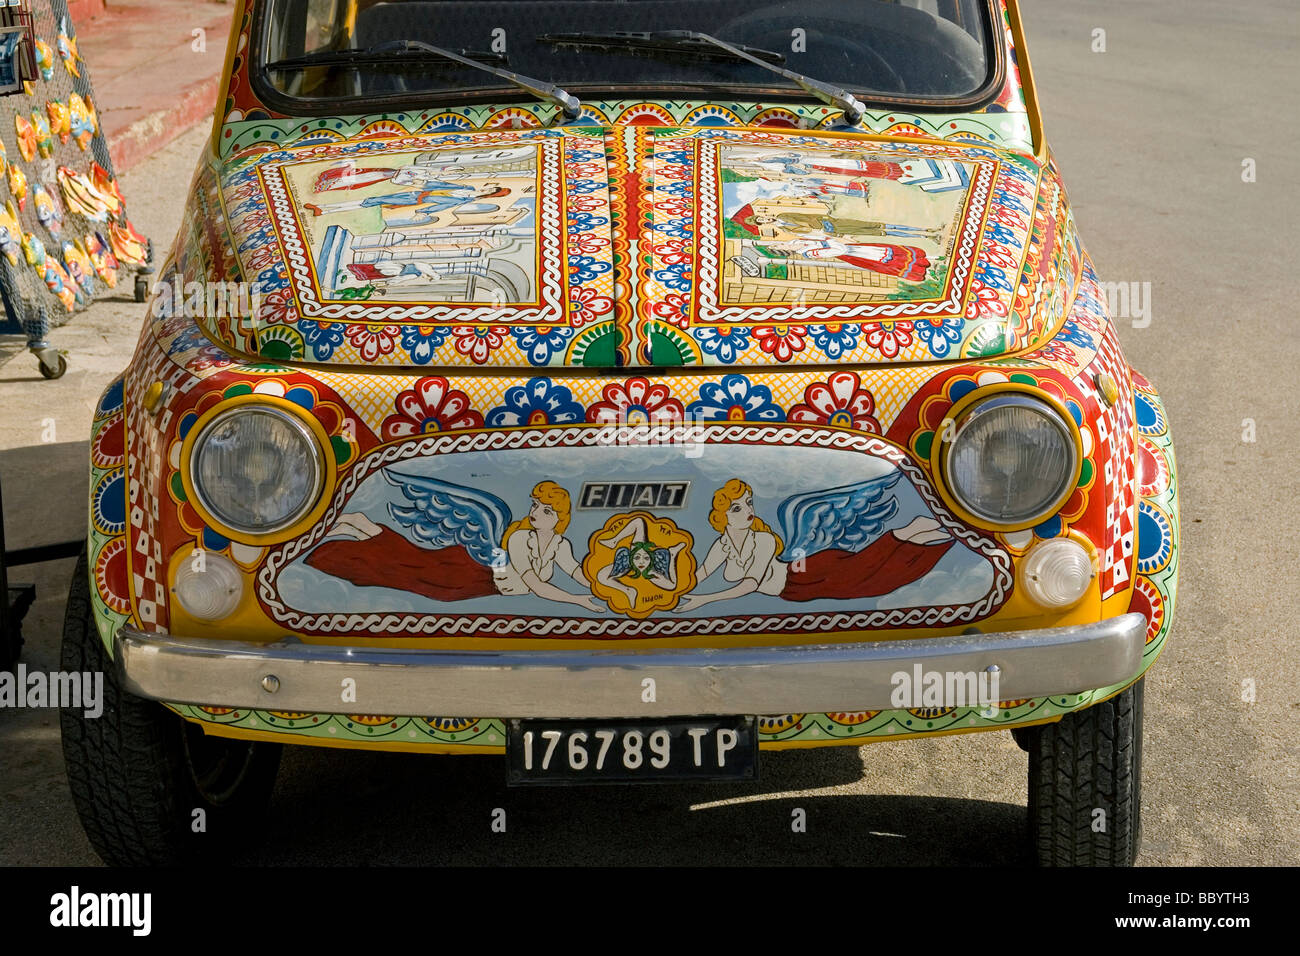 Fiat 500 dekorative Farbe Kunst Auto, Marinella, Sizilien, Italien Stockfoto